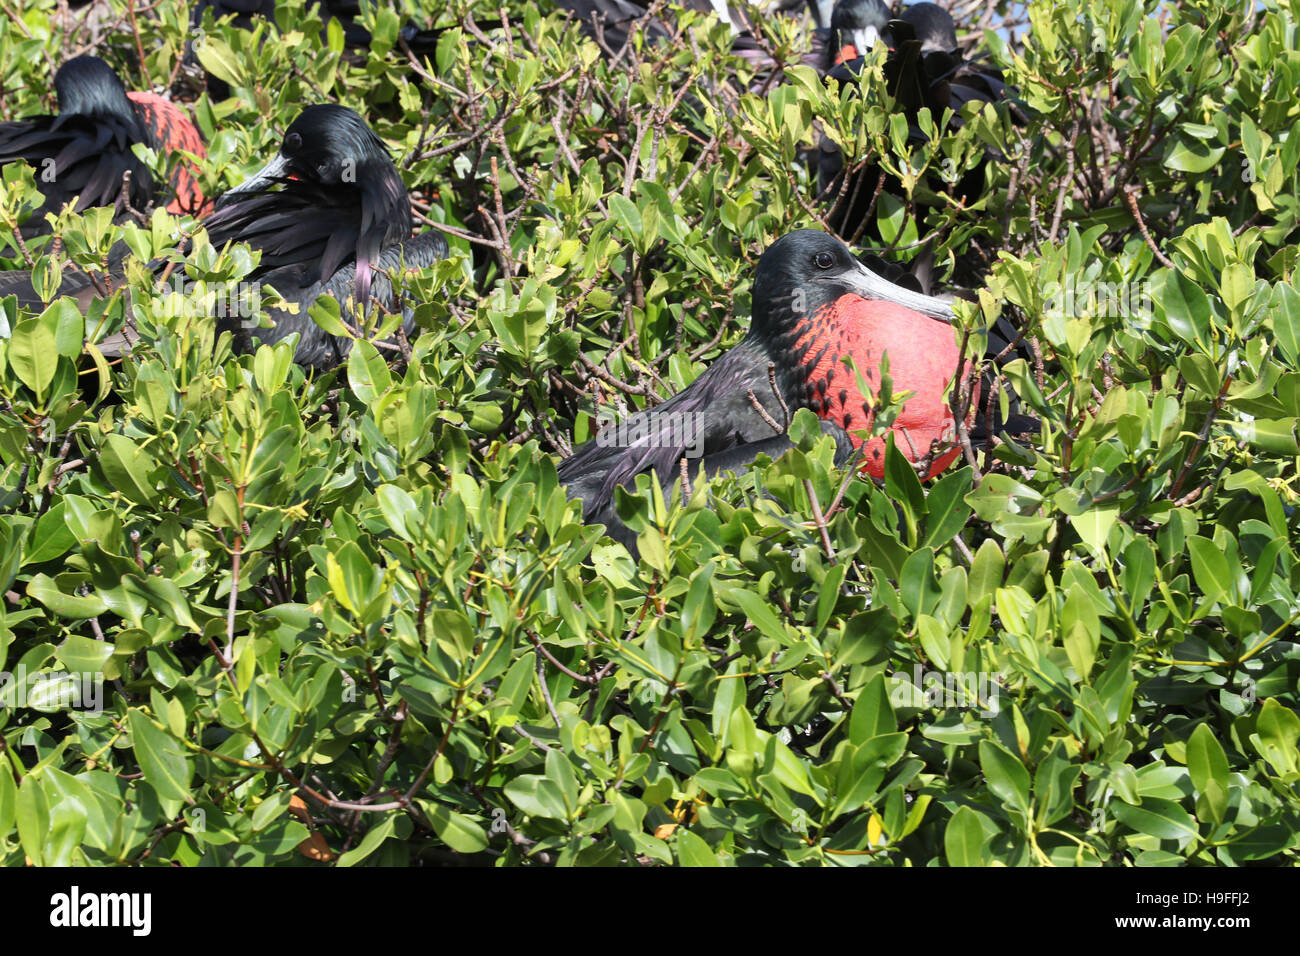 Les frégates vu par le prince Harry alors qu'il prend un tour en bateau à travers les mangroves sur l'île de Barbuda pour voir l'une des plus grandes colonies d'oiseaux dans le monde, comme il continue sa tournée des Caraïbes. Banque D'Images